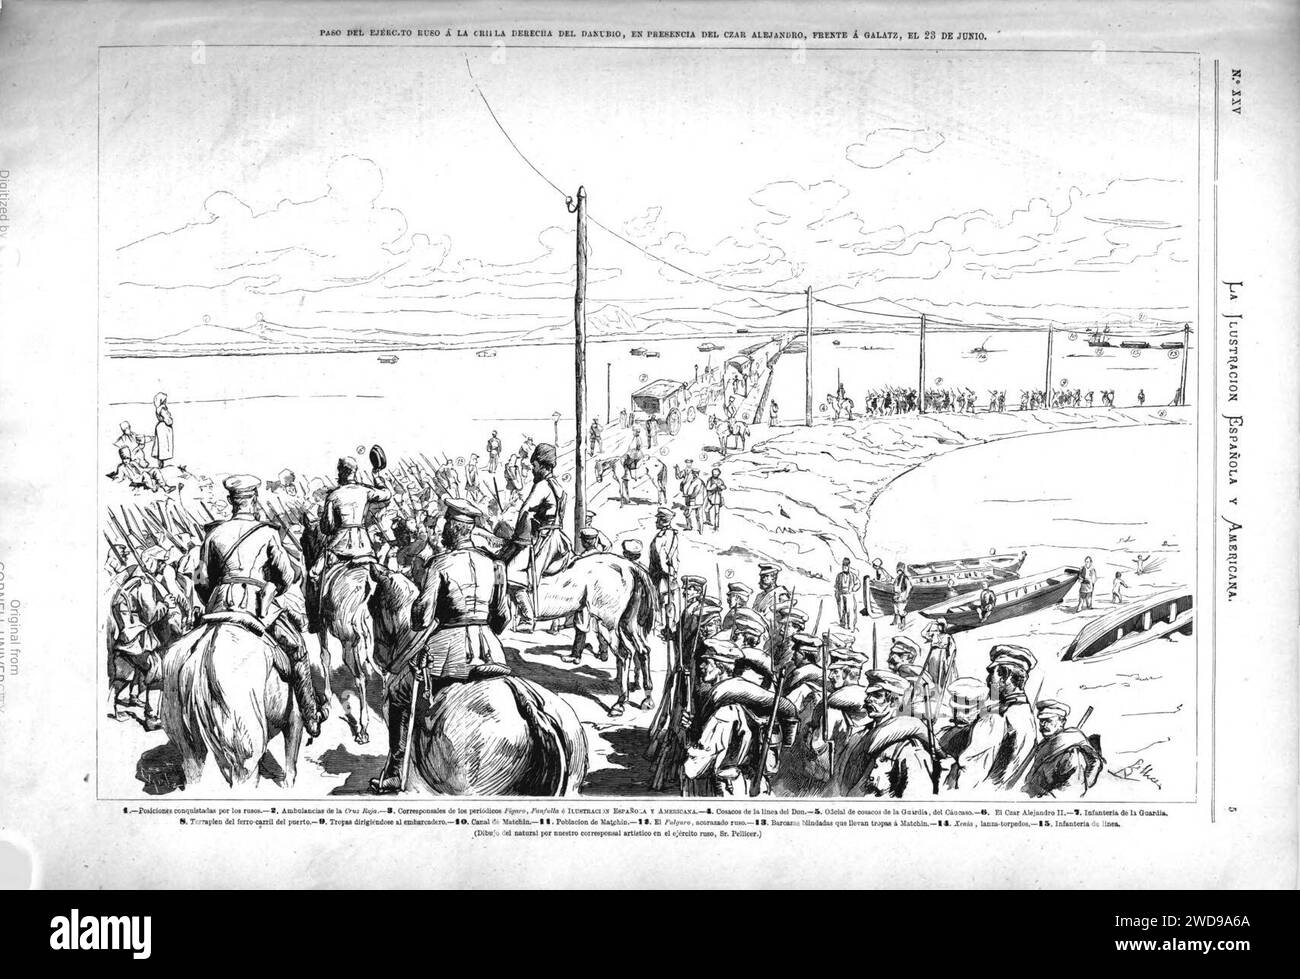 1877-07-08, La Ilustración Española y Americana, Paso del Ejército ruso á la orilla derecha del Danubio, en presencia del czar Alejandro, frente á Galatz, el 23 de junio. Stock Photo